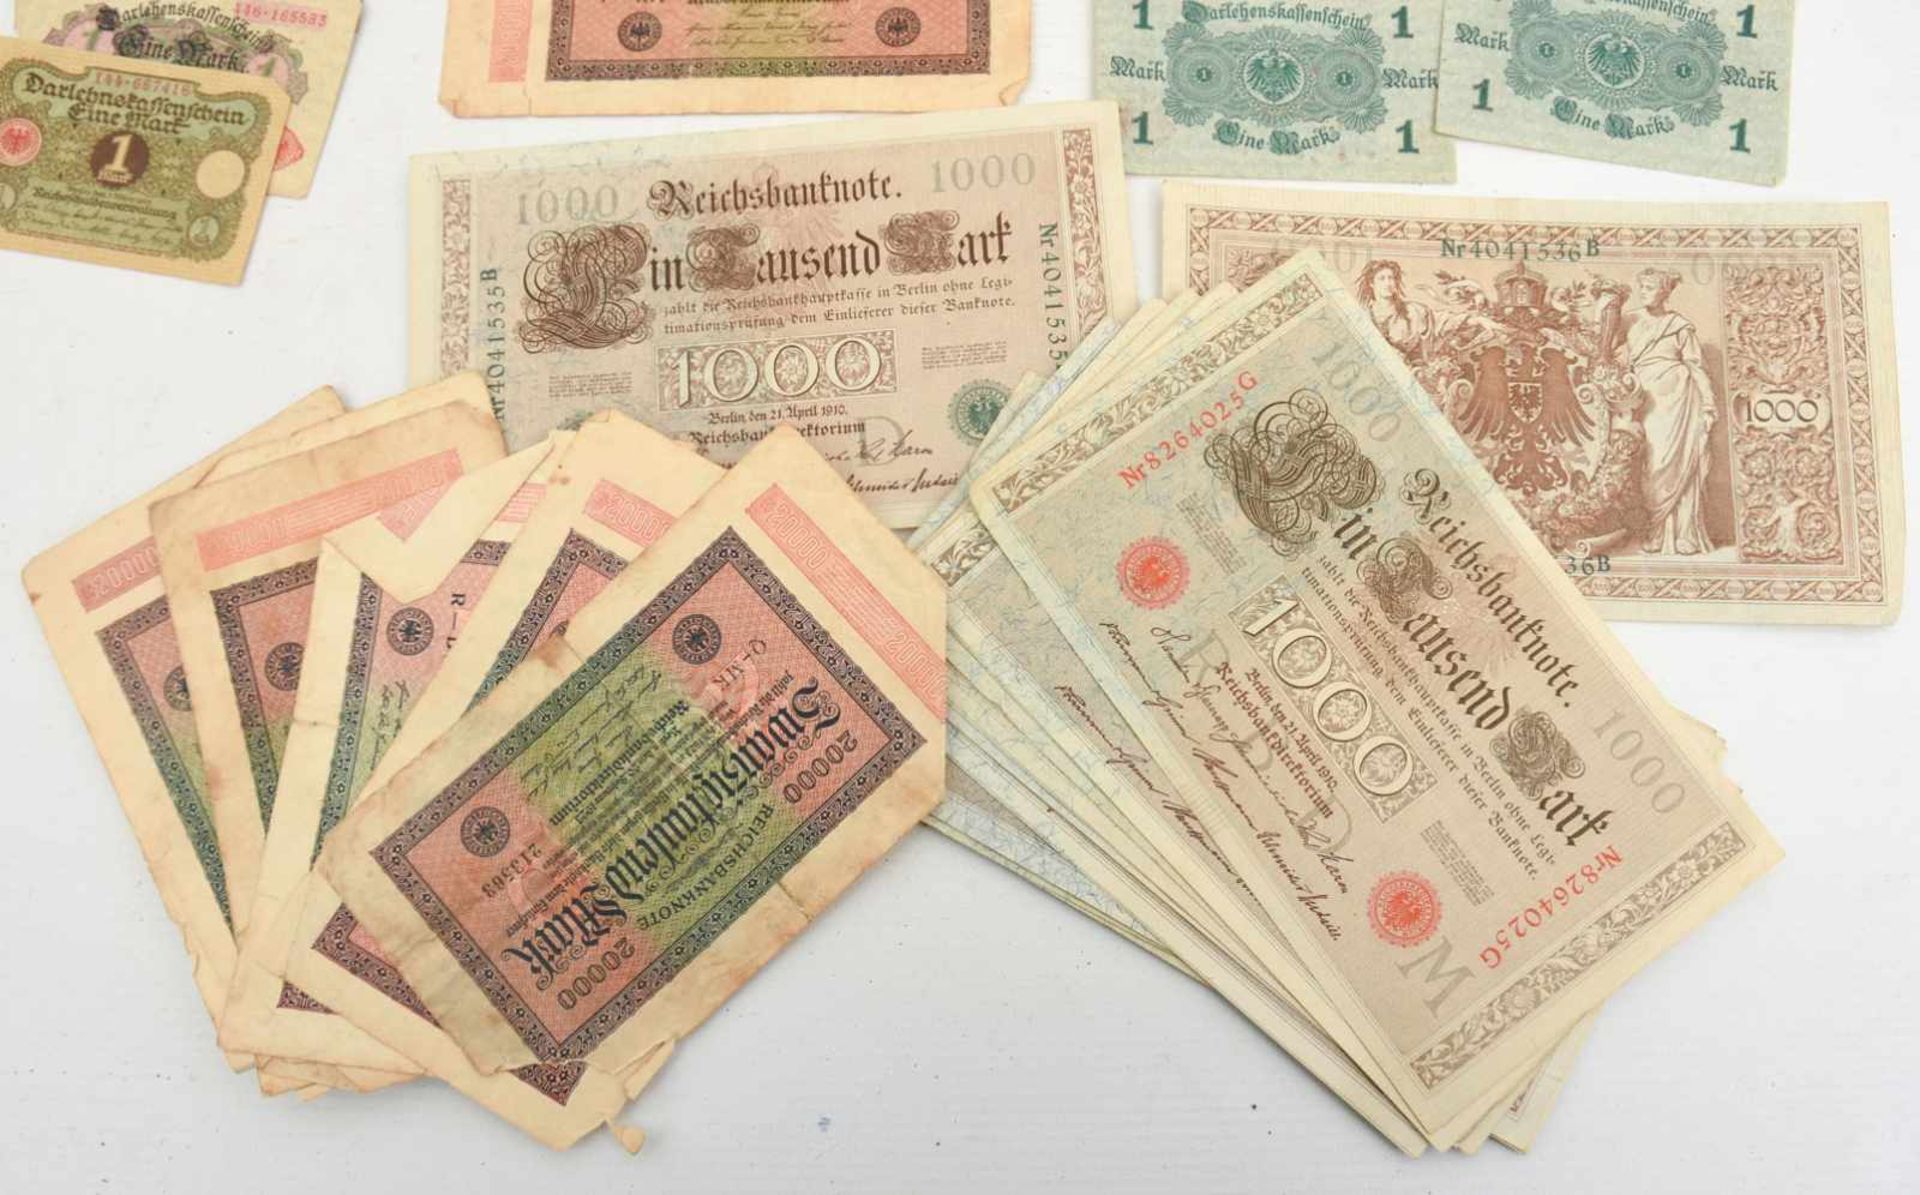 HISTORISCHE GELDSCHEINE/INFLATIONSGELD, Deutsches Reich/Württemberg 1910-1923 Verschiedene - Image 2 of 5